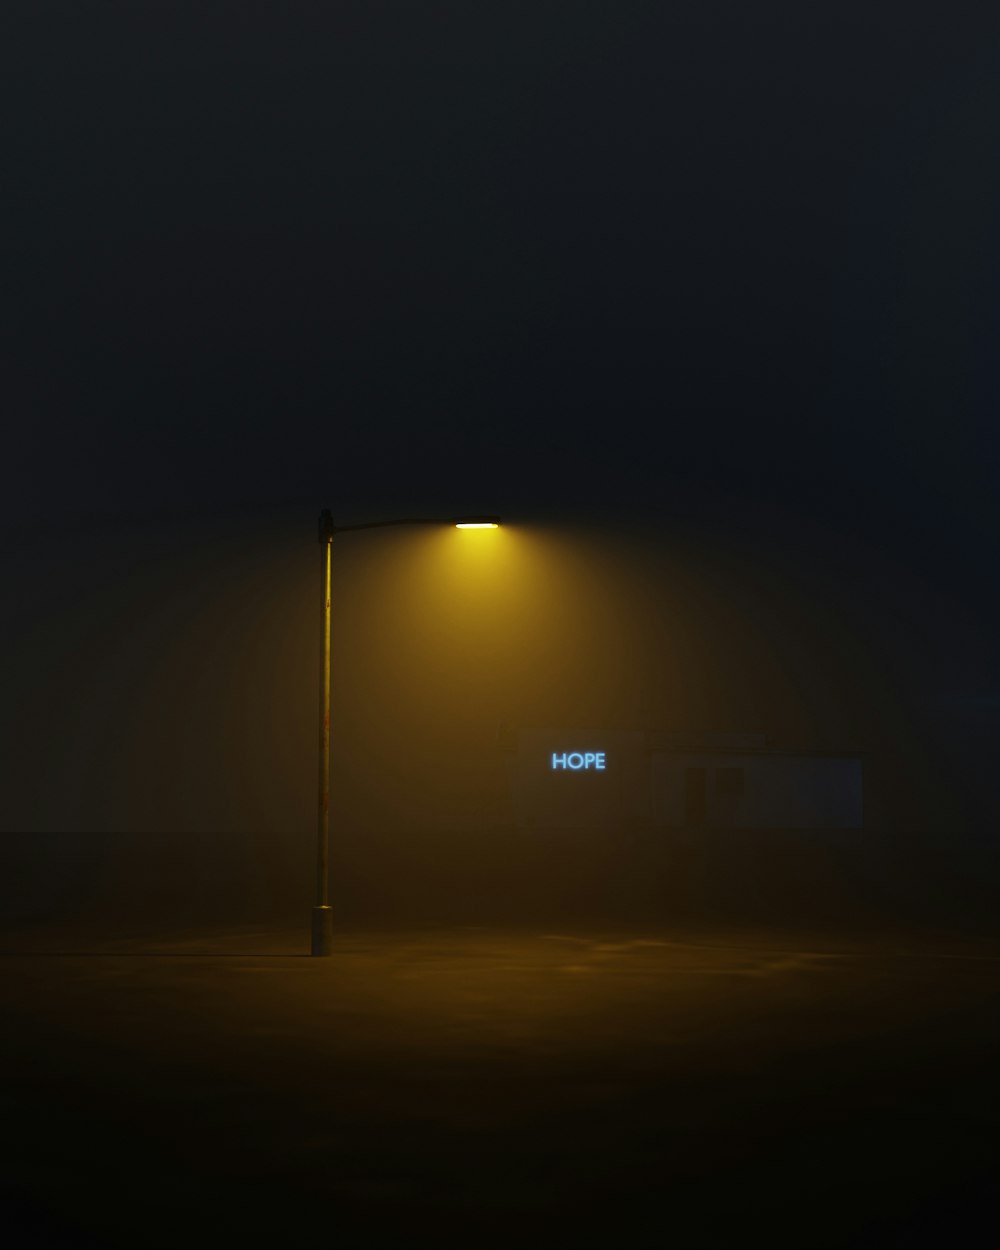 Un lampione di notte foto – Immagine digitale Immagine gratuita su Unsplash